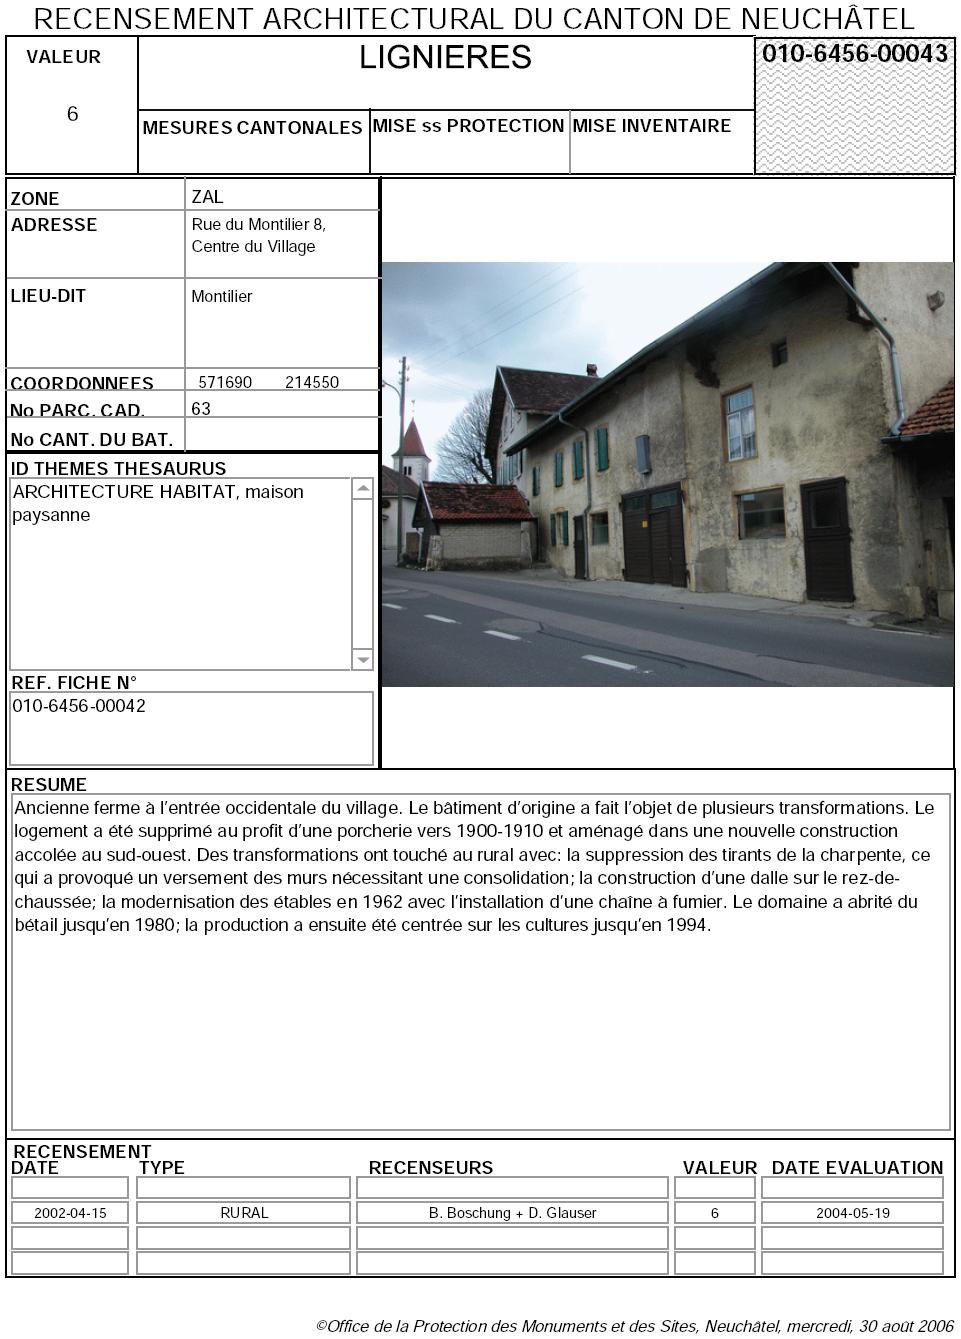 Recensement architectural du canton de Neuchâtel: Fiche 010-6456-00043